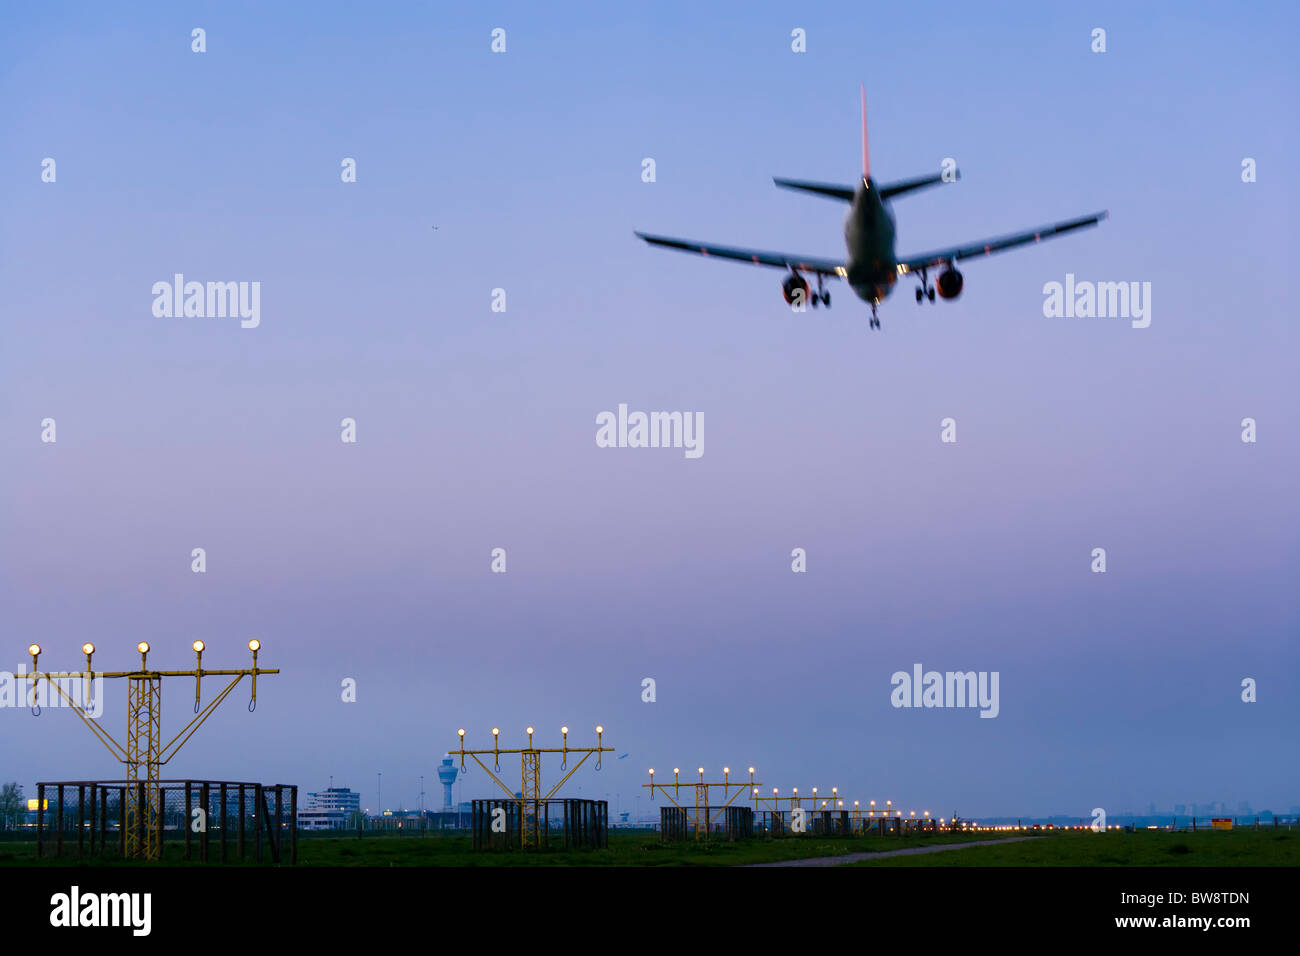 L'aéroport d'Amsterdam Schiphol au crépuscule. Avion avion qui approche, l'atterrissage, sur la piste Kaagbaan. Banque D'Images